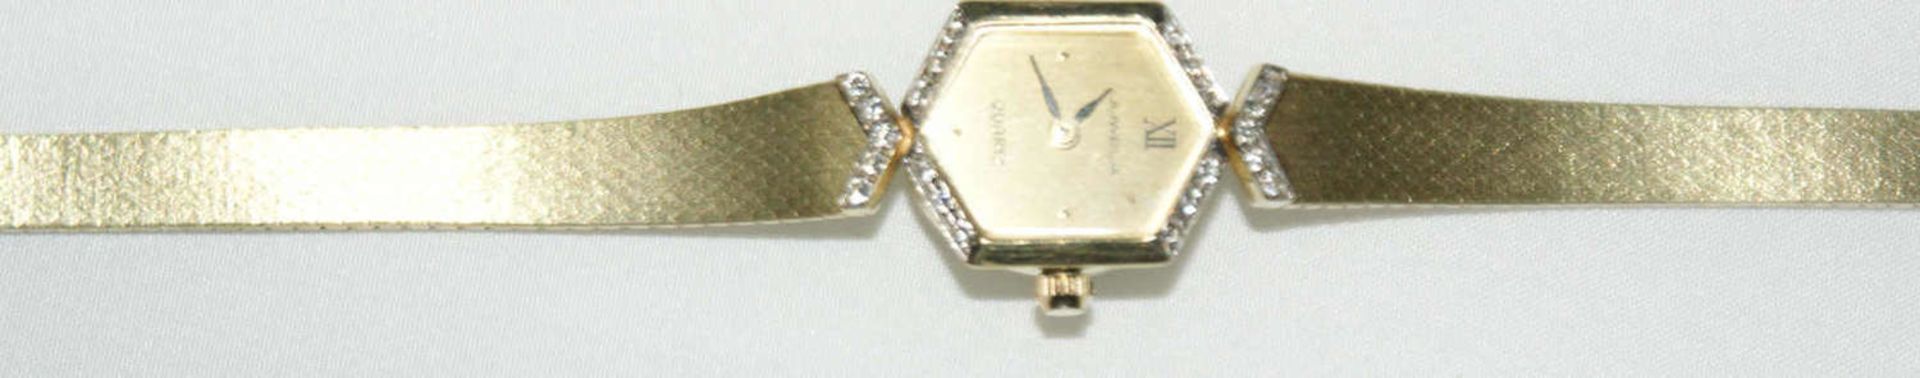 Damenarmbanduhr, 585er Gelbgold, Hersteller: Juwela, Quarzwerk, besetzt mit zahlreichen - Image 2 of 3